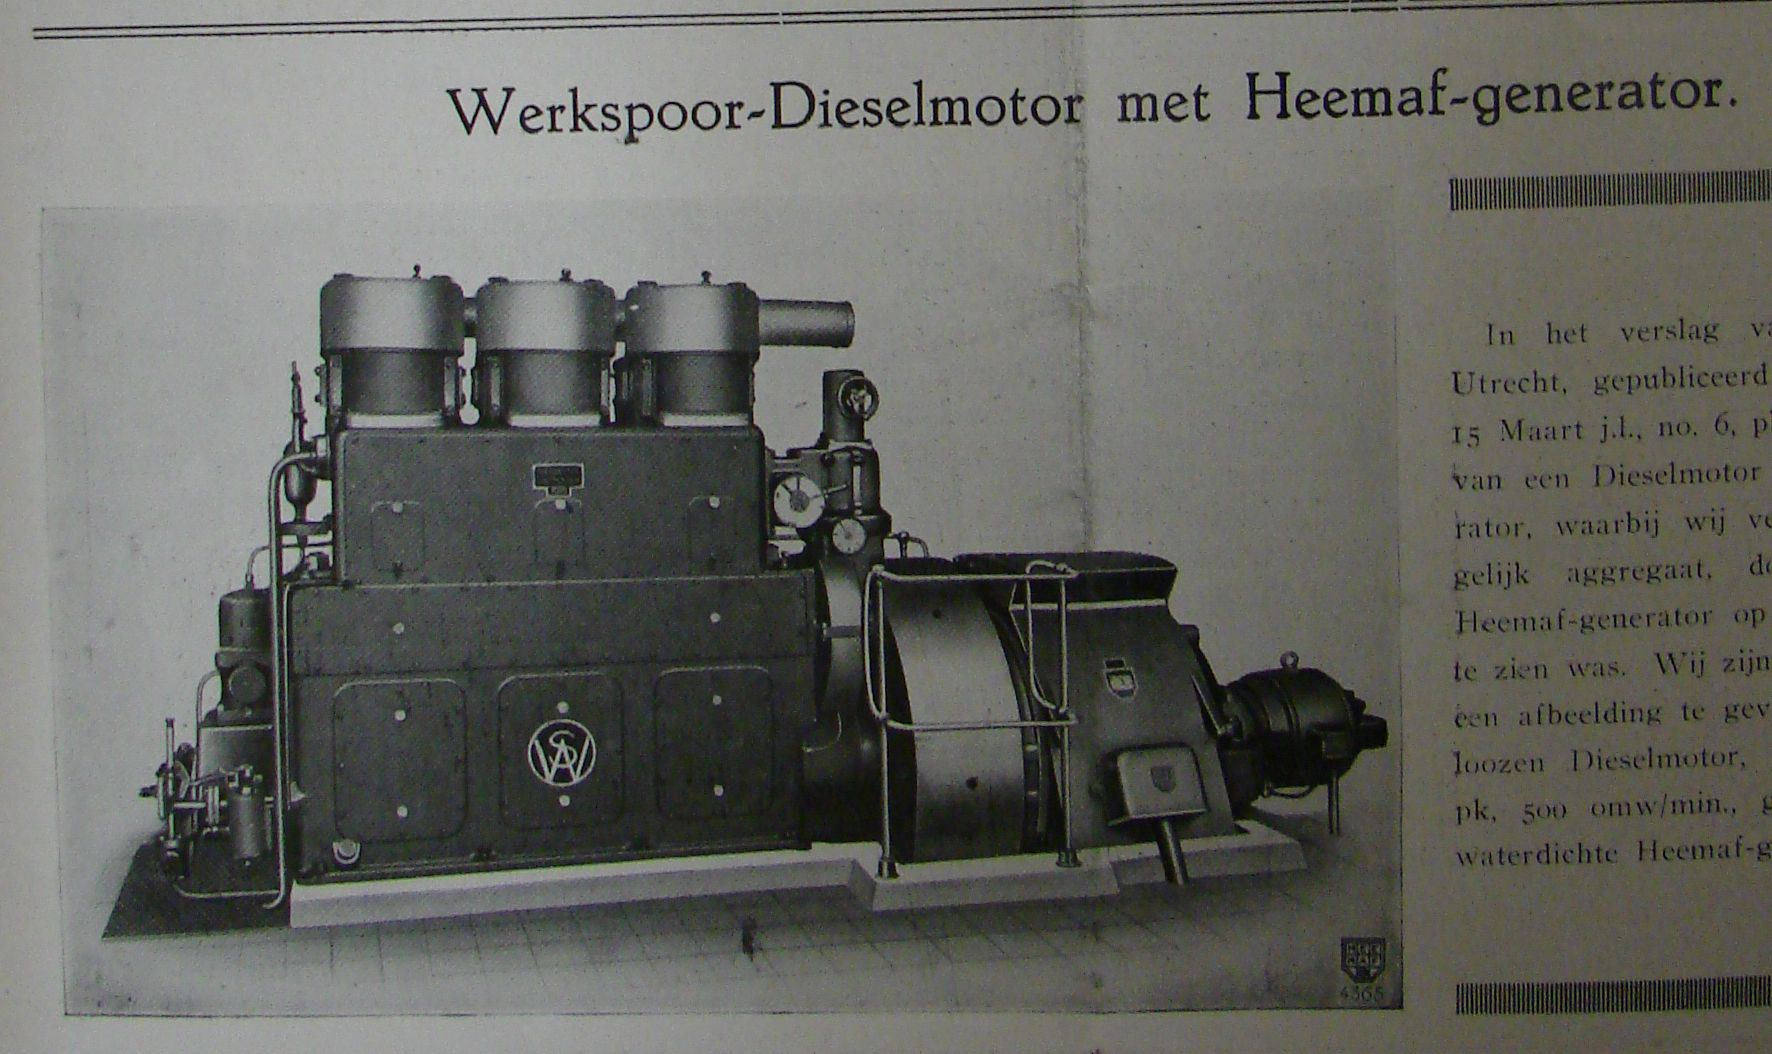 Werkspoor dieselmotor met Heemaf generator 1932